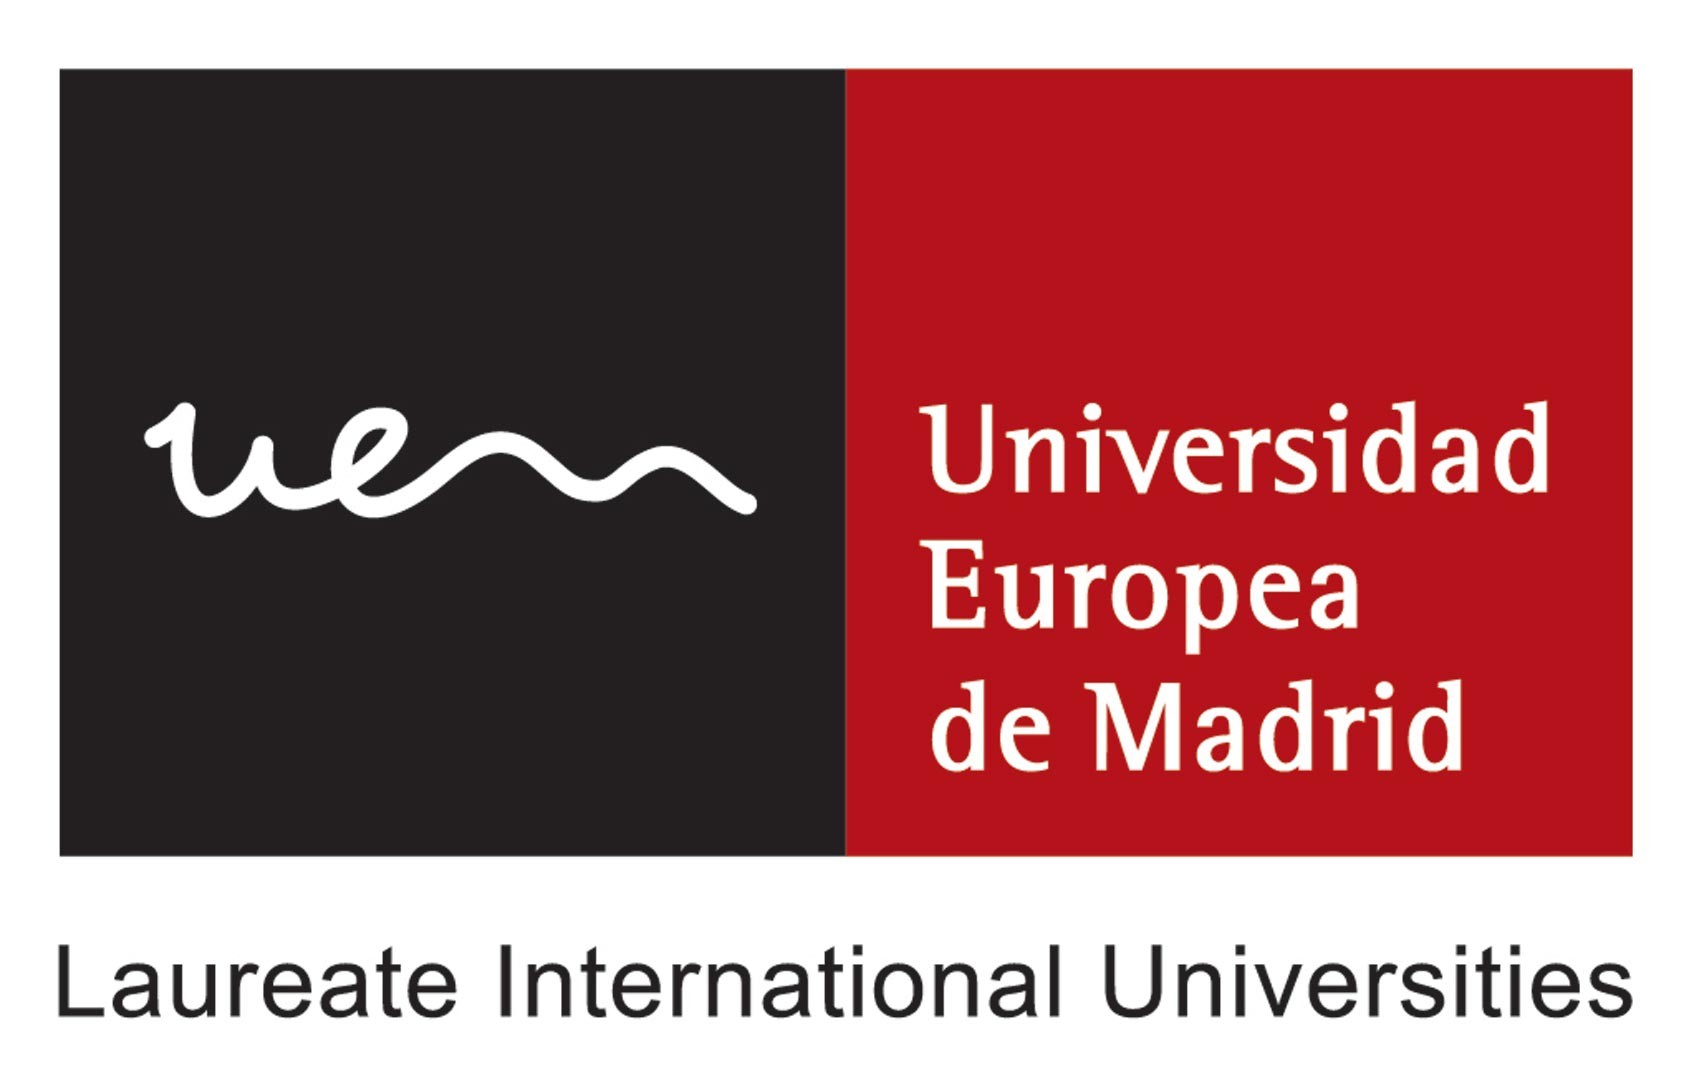 Imagen de la empresa Universidad Europea de Madrid a la que se le ofrecen los descuentos